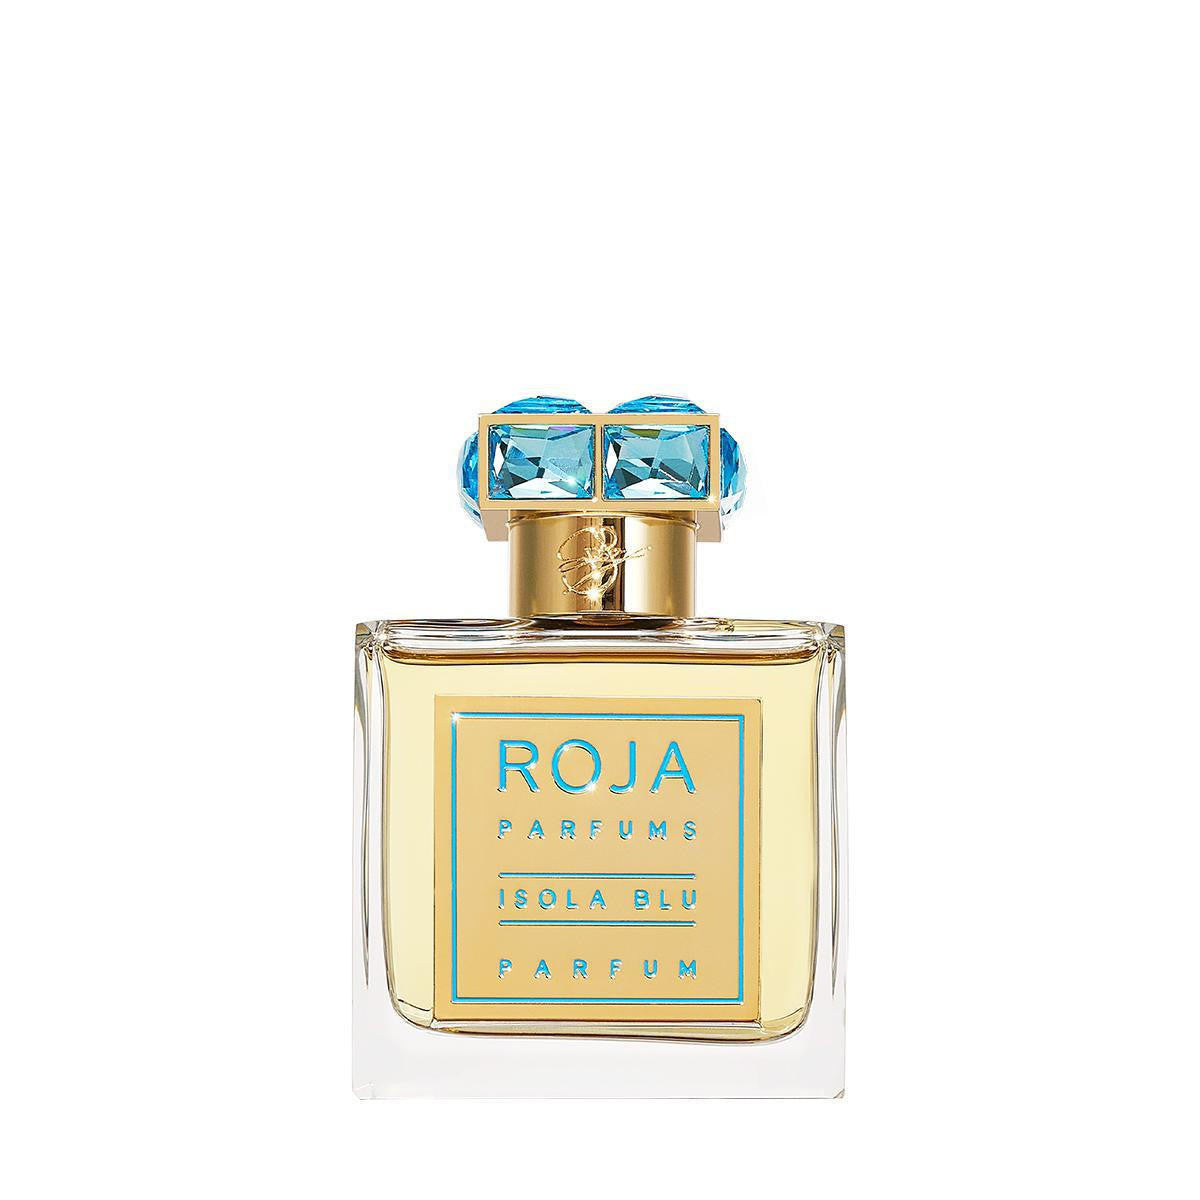 ROJA Roja Isola Blu Parfum 